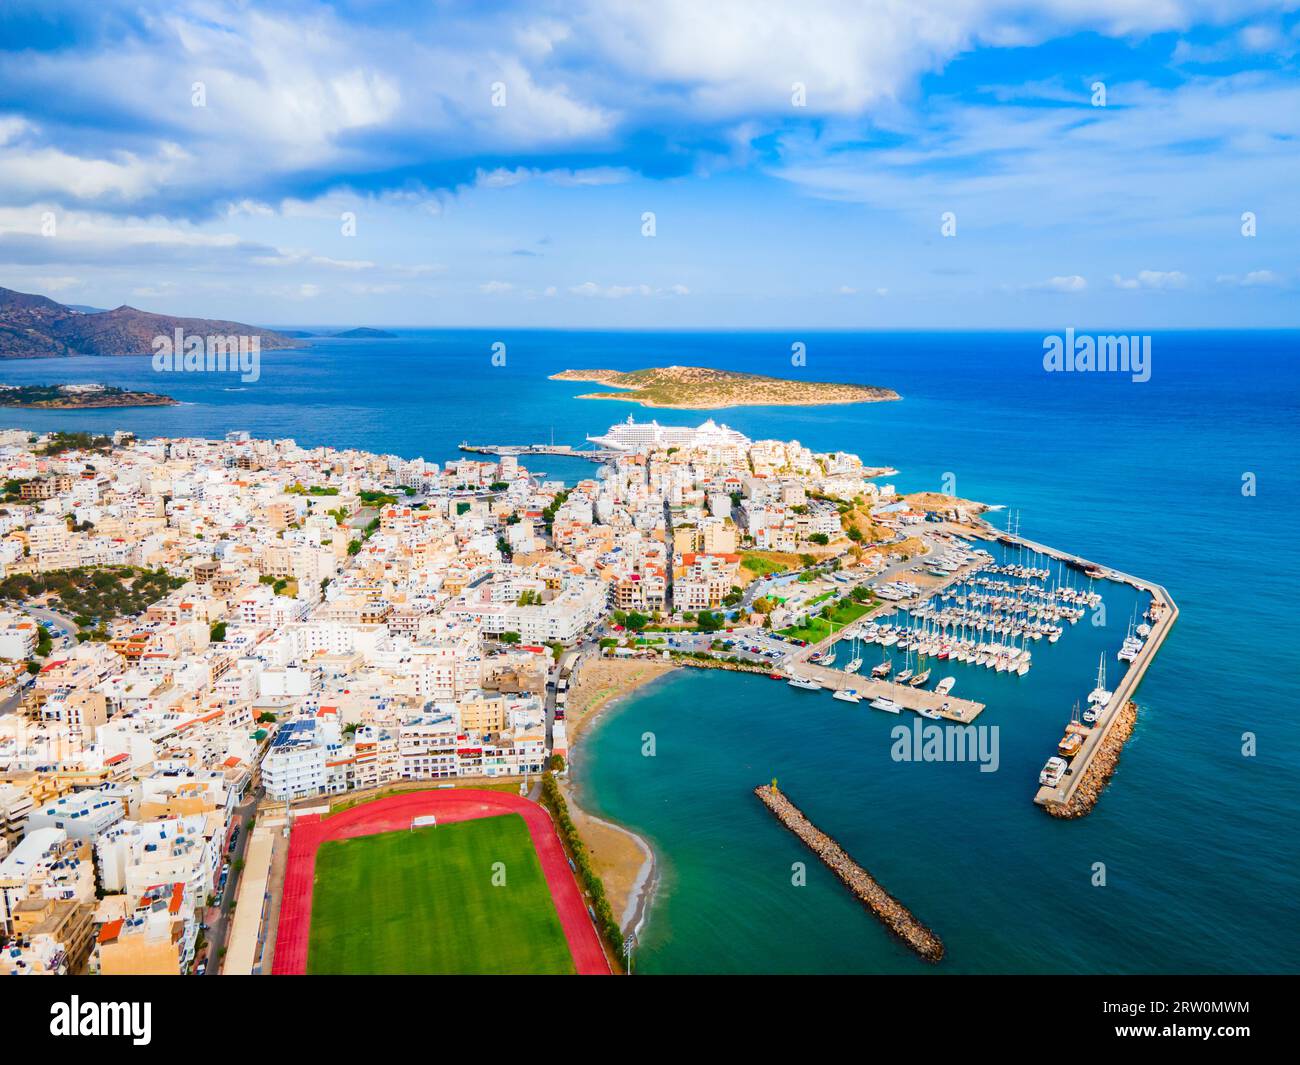 Vue panoramique sur le port d'Agios Nikolaos. Agios, Hagios ou Aghios Nikolaos est une ville côtière sur l'île de Crète en Grèce. Banque D'Images